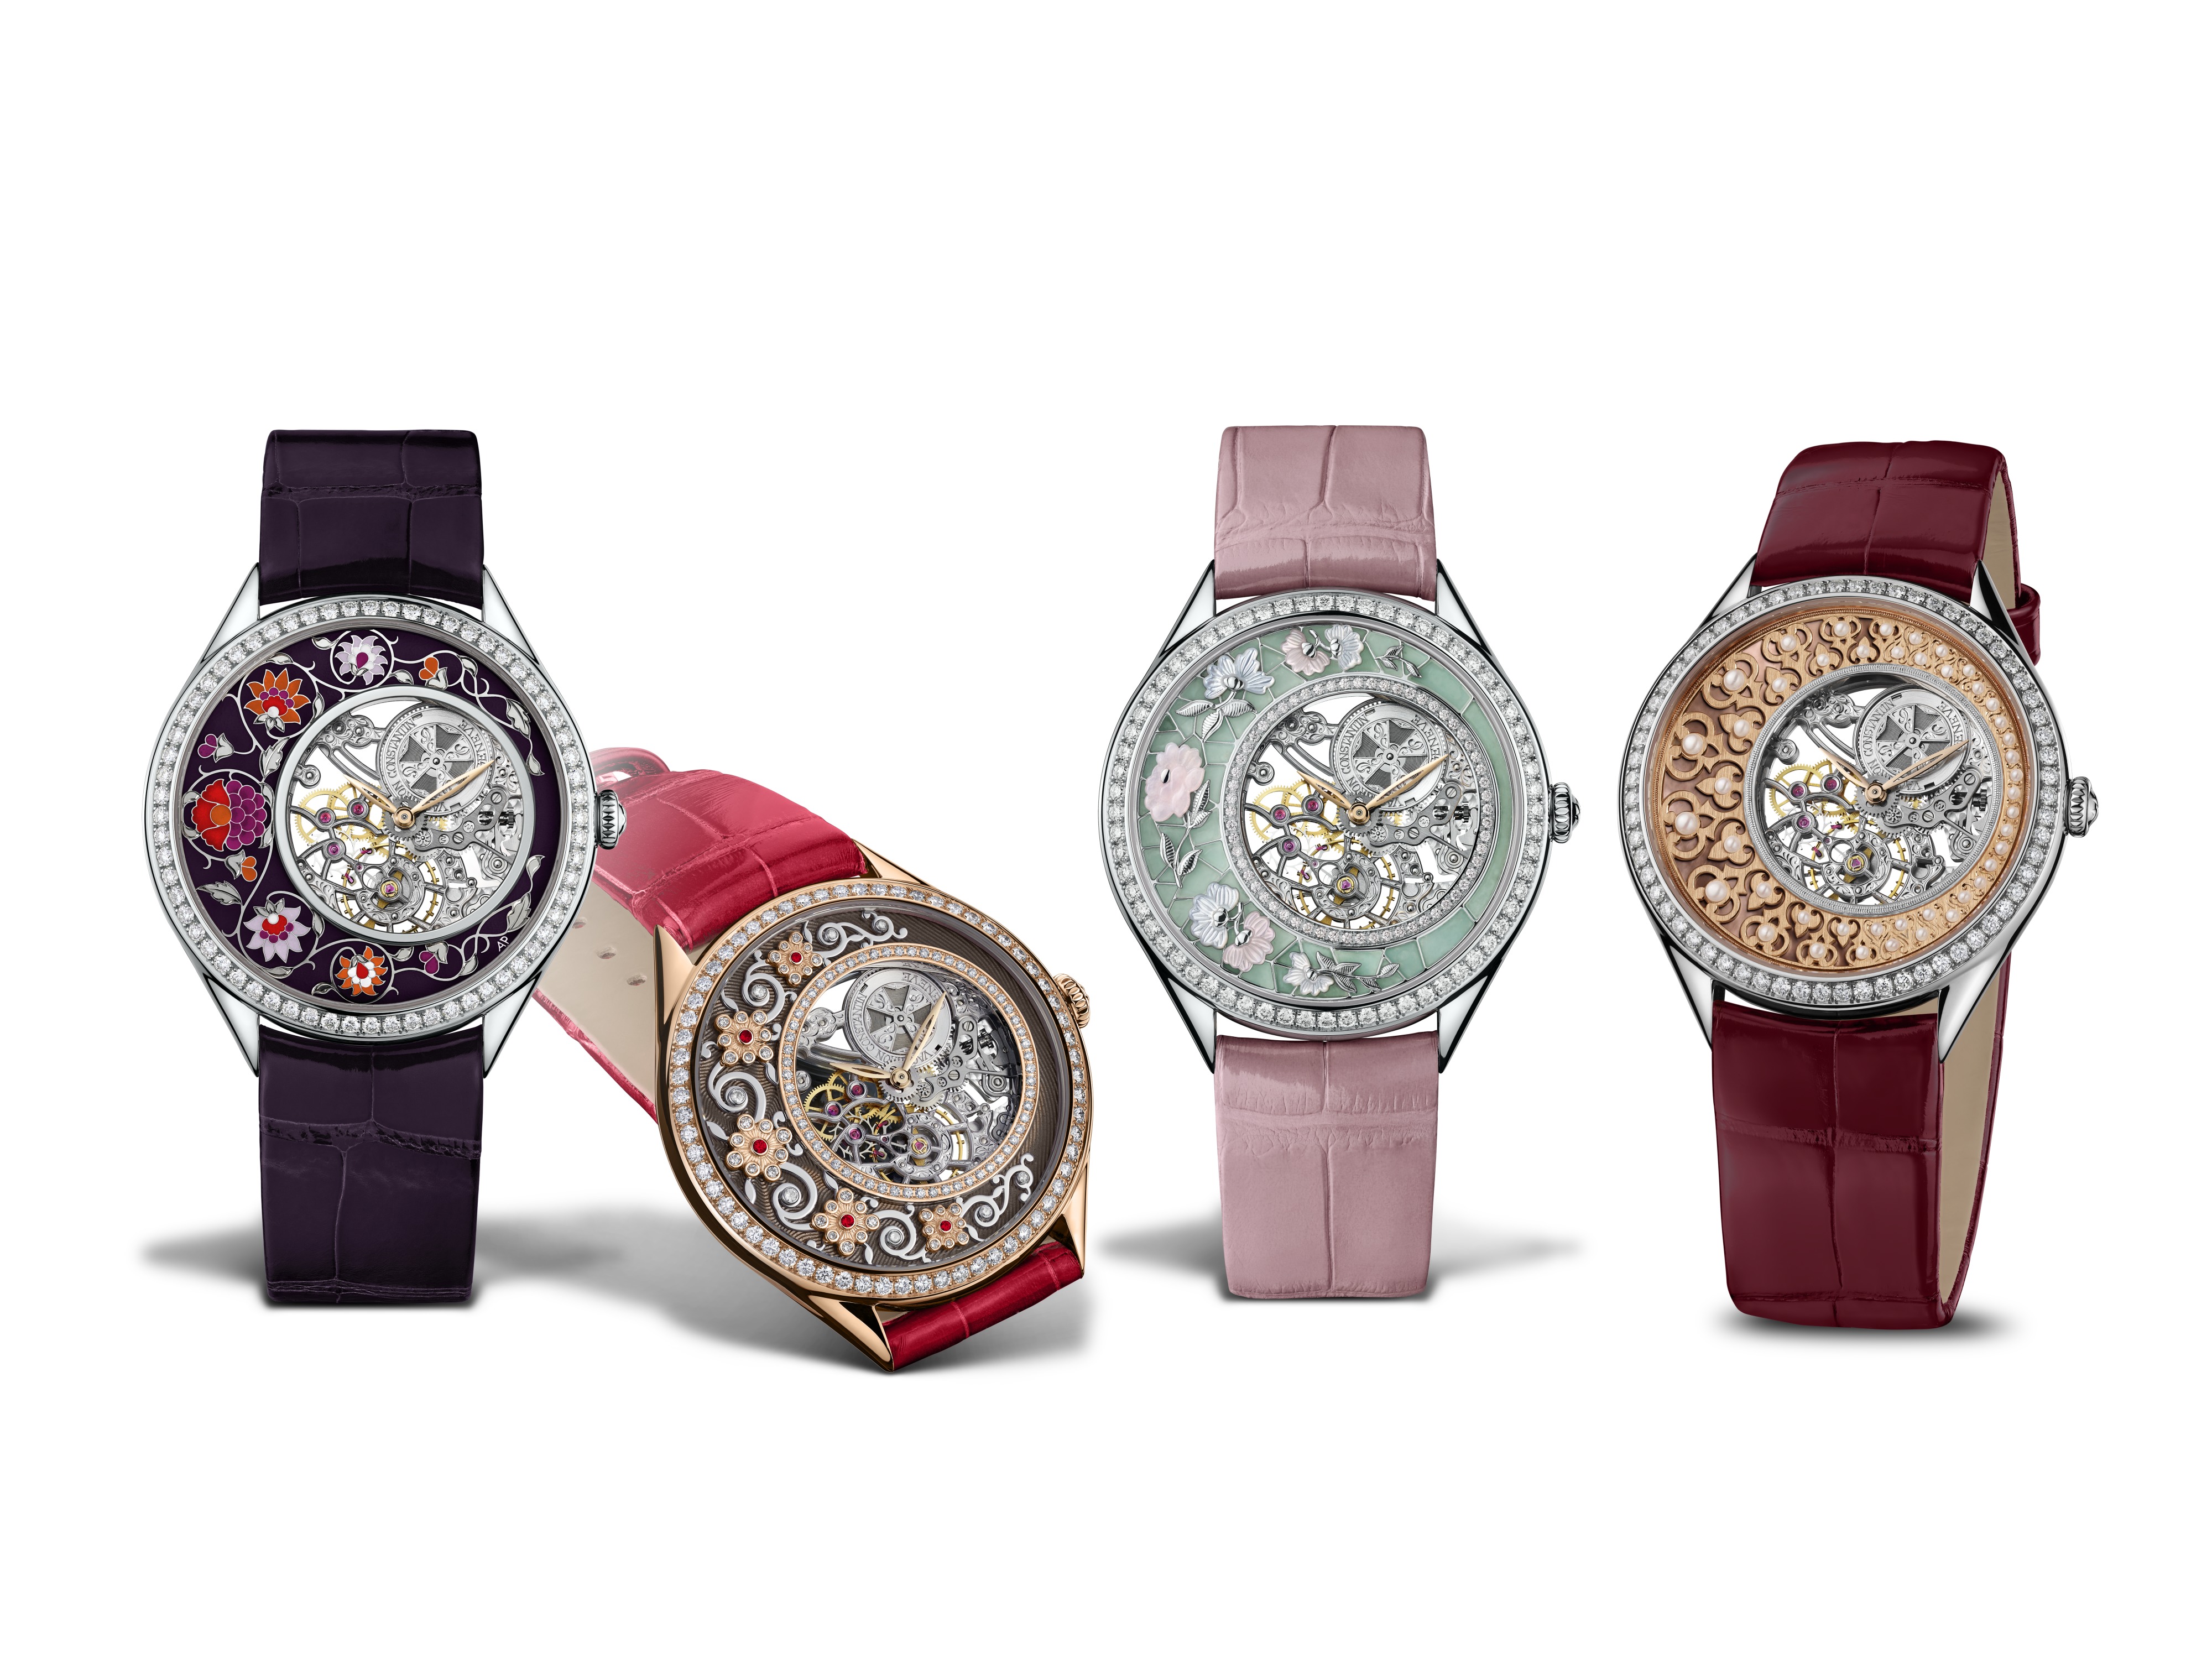 Os novos modelos de relógios Vacheron Constantin